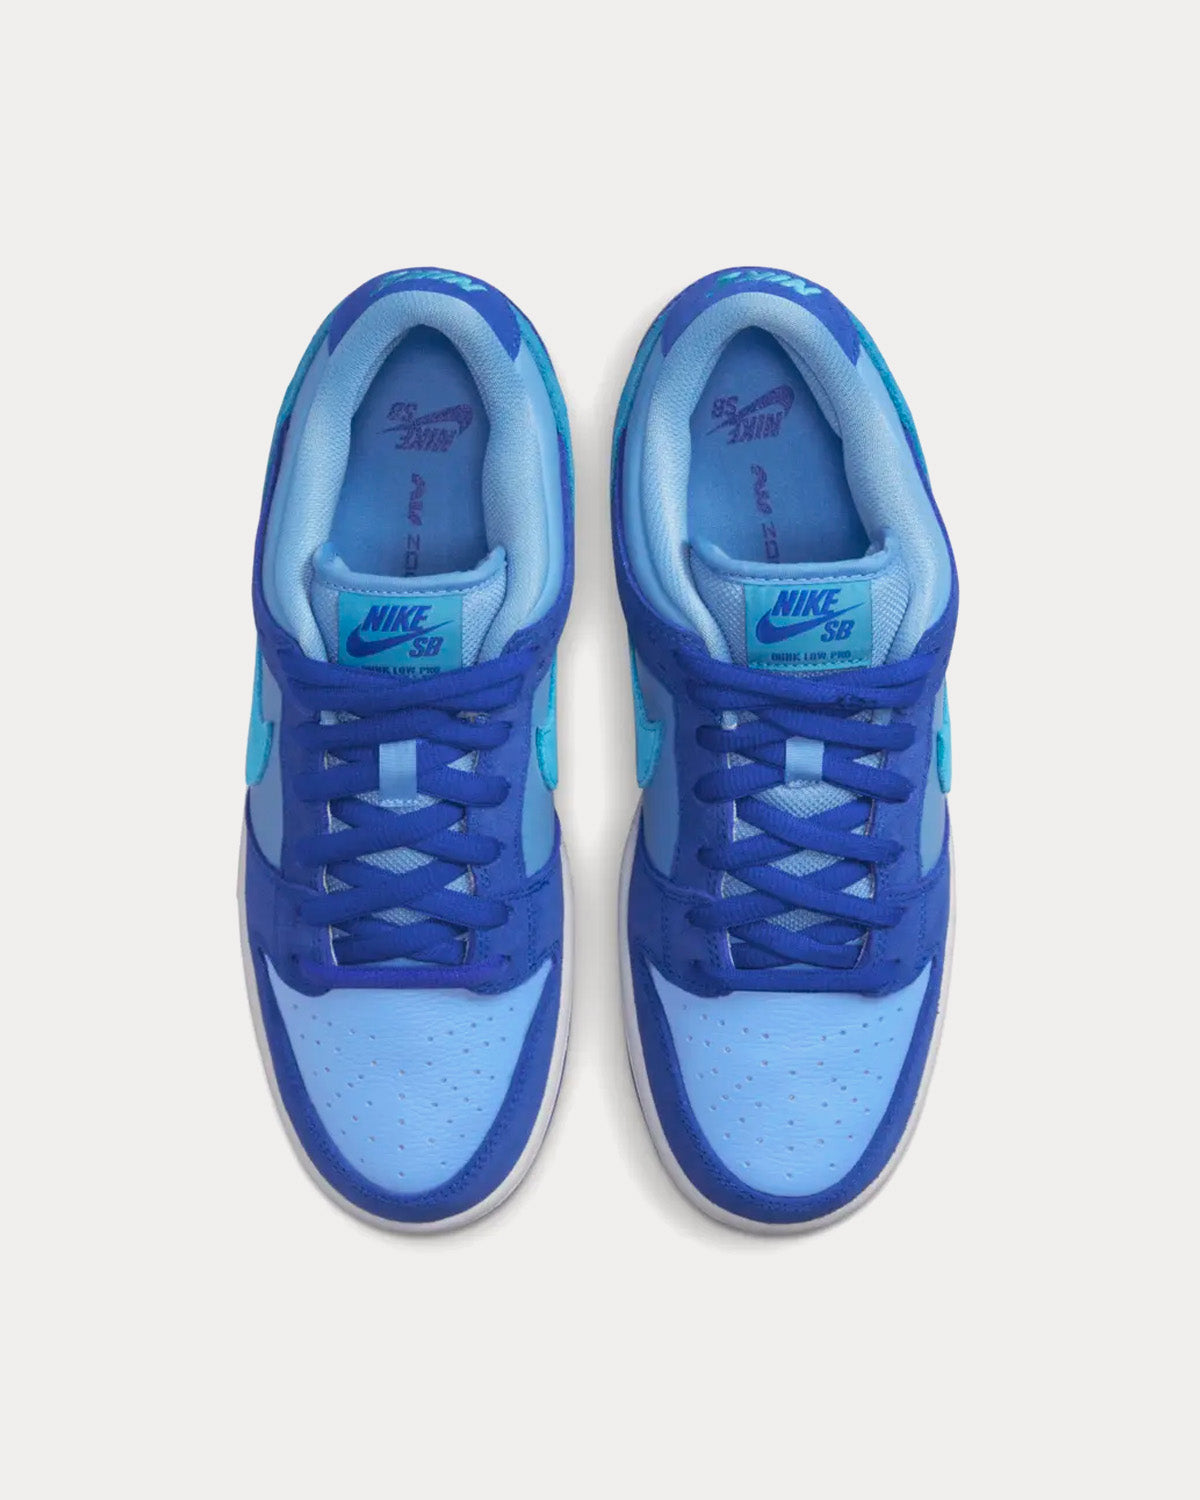 Nike SB Dunk Low 'Blue Raspberry' Low Top Sneakers - Sneak in Peace